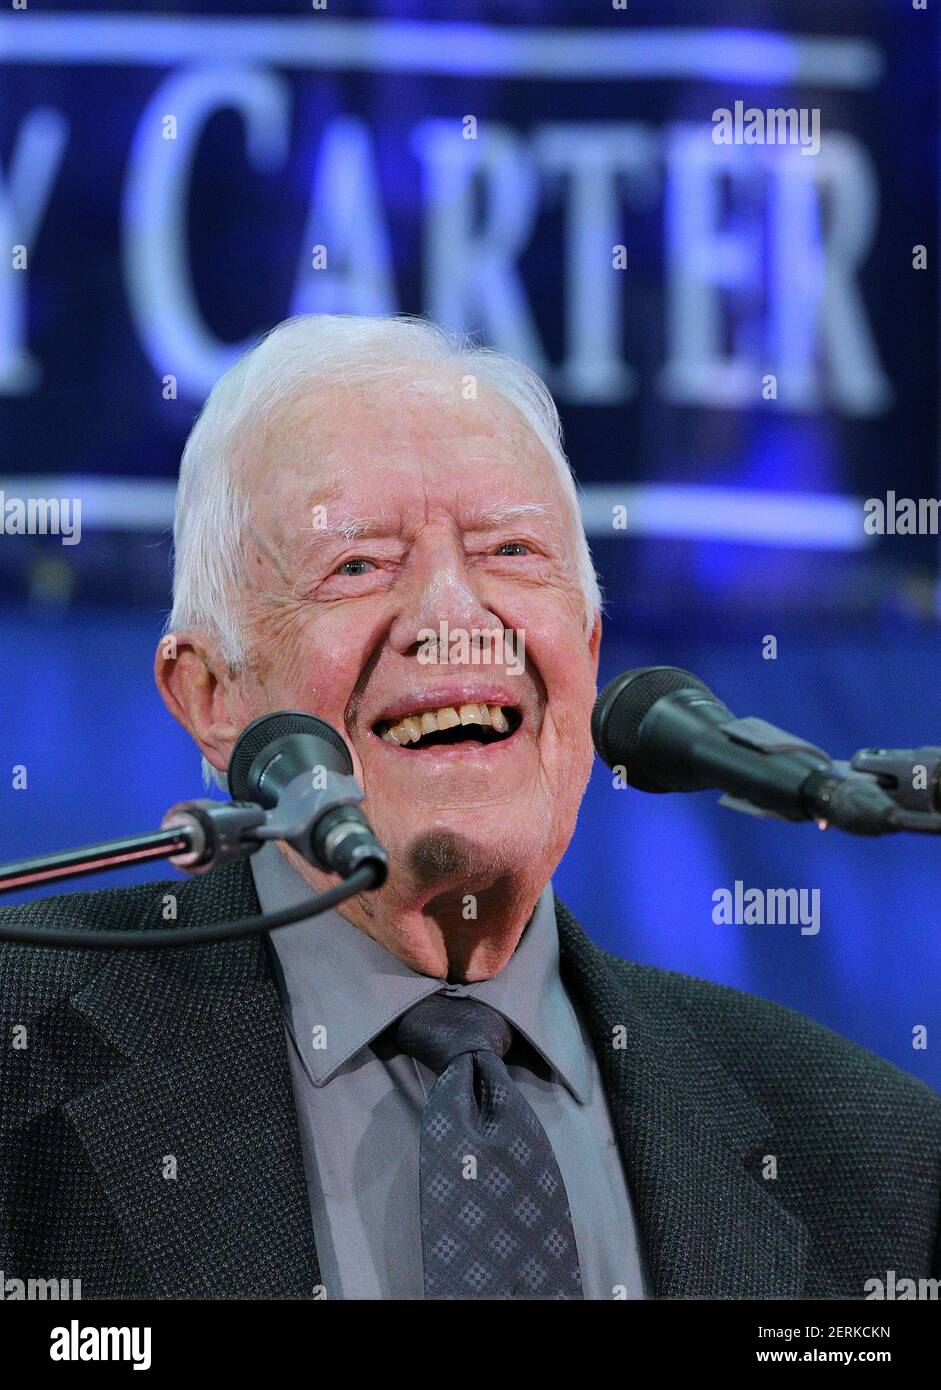 El ex presidente Jimmy Carter, de 93 años, responde a las preguntas de los estudiantes durante su ayuntamiento anual con el estudiante de primer año de la Universidad Emory en el gimnasio del campus el miércoles, 12 de septiembre de 2018, en Atlanta. (Foto de Curtis Compton/Atlanta Journal-Constitution/TNS/Sipa USA) Foto de stock